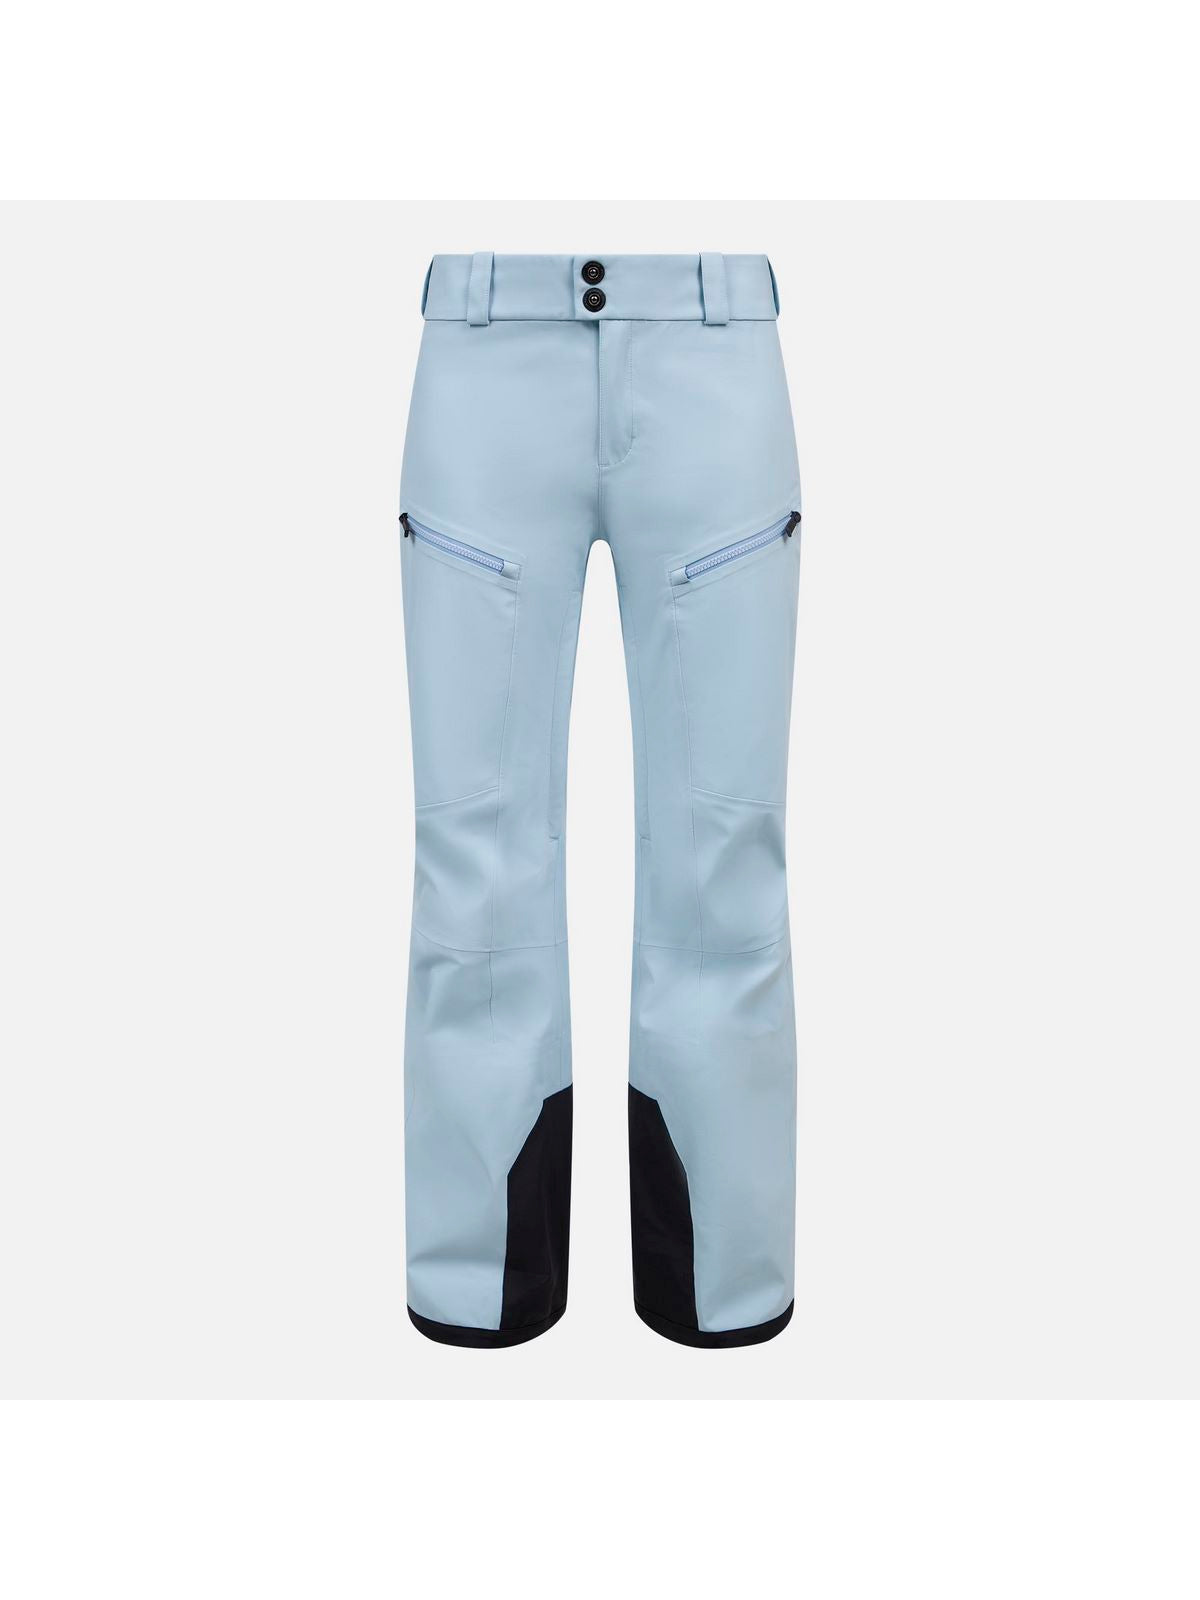 Spodnie Rossignol W Skpr 3L Ayr Pant niebieski